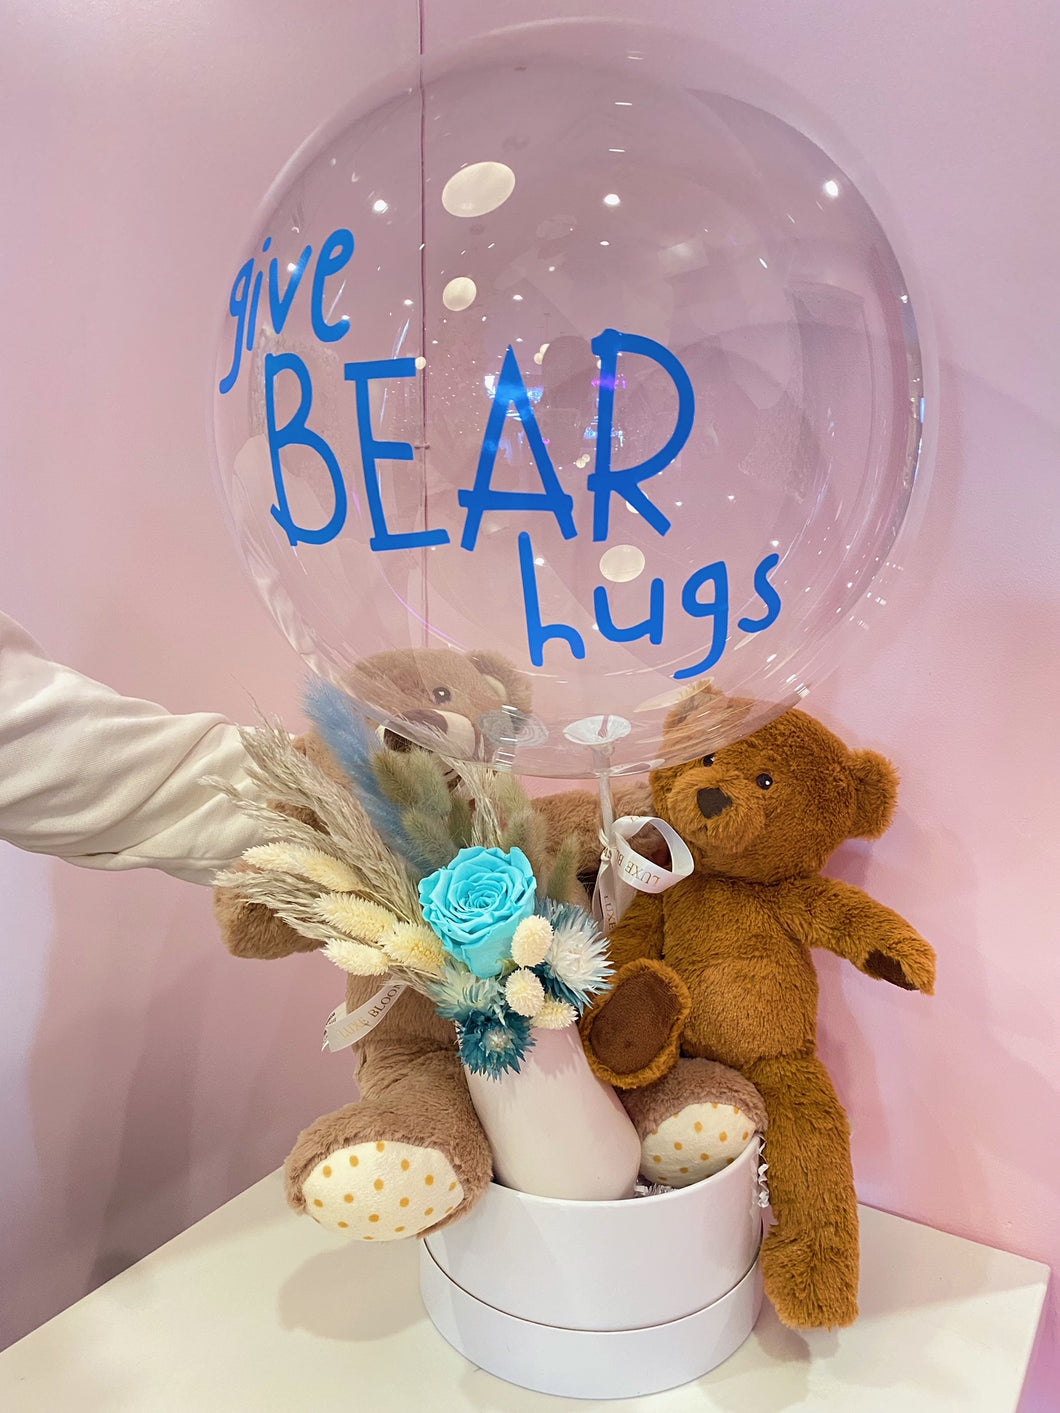 Give Bear Hugs Gift Set